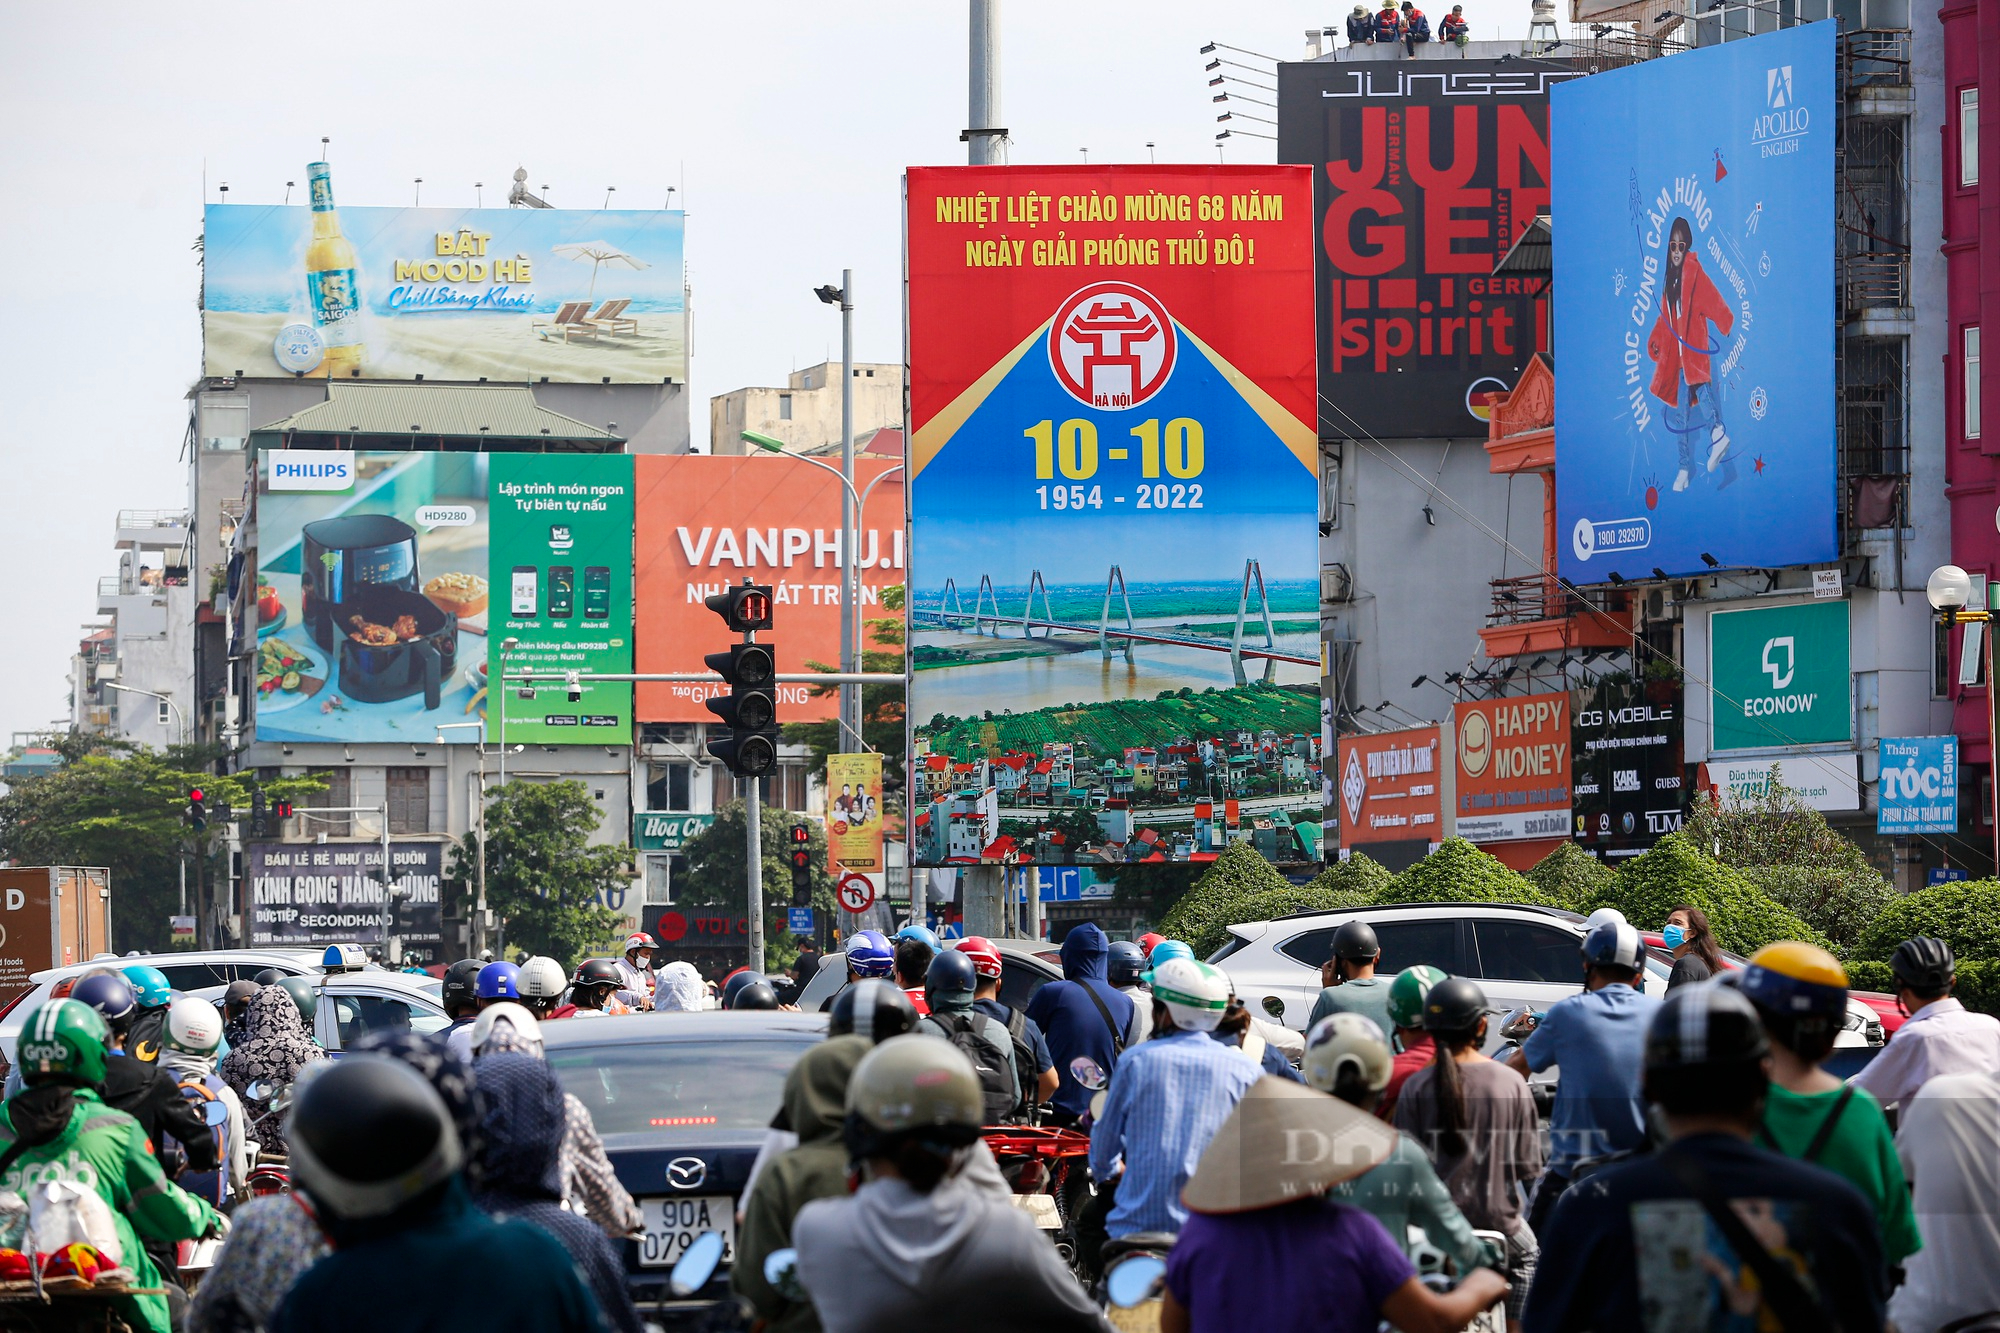 Đường phố Hà Nội rực rỡ chào mừng kỷ niệm 68 năm Giải phóng Thủ đô  - Ảnh 10.